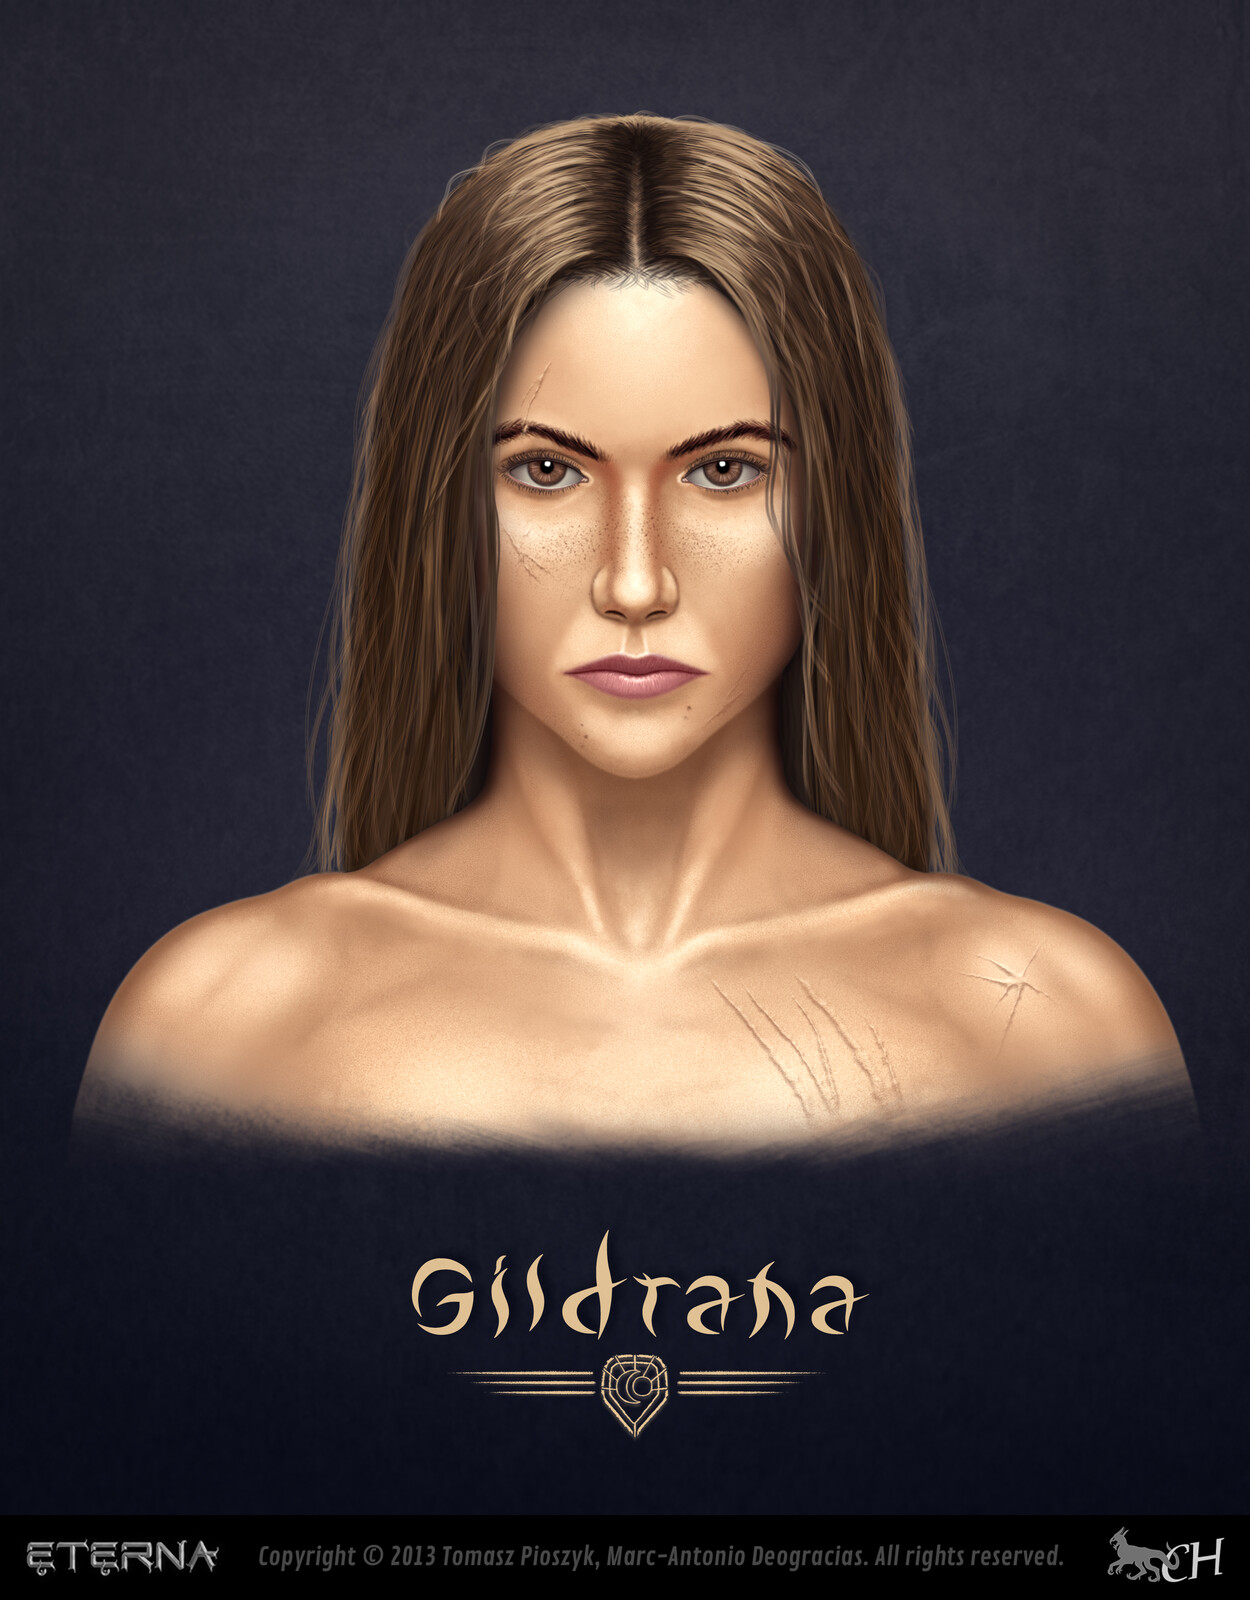 Gildrana with hair loose.